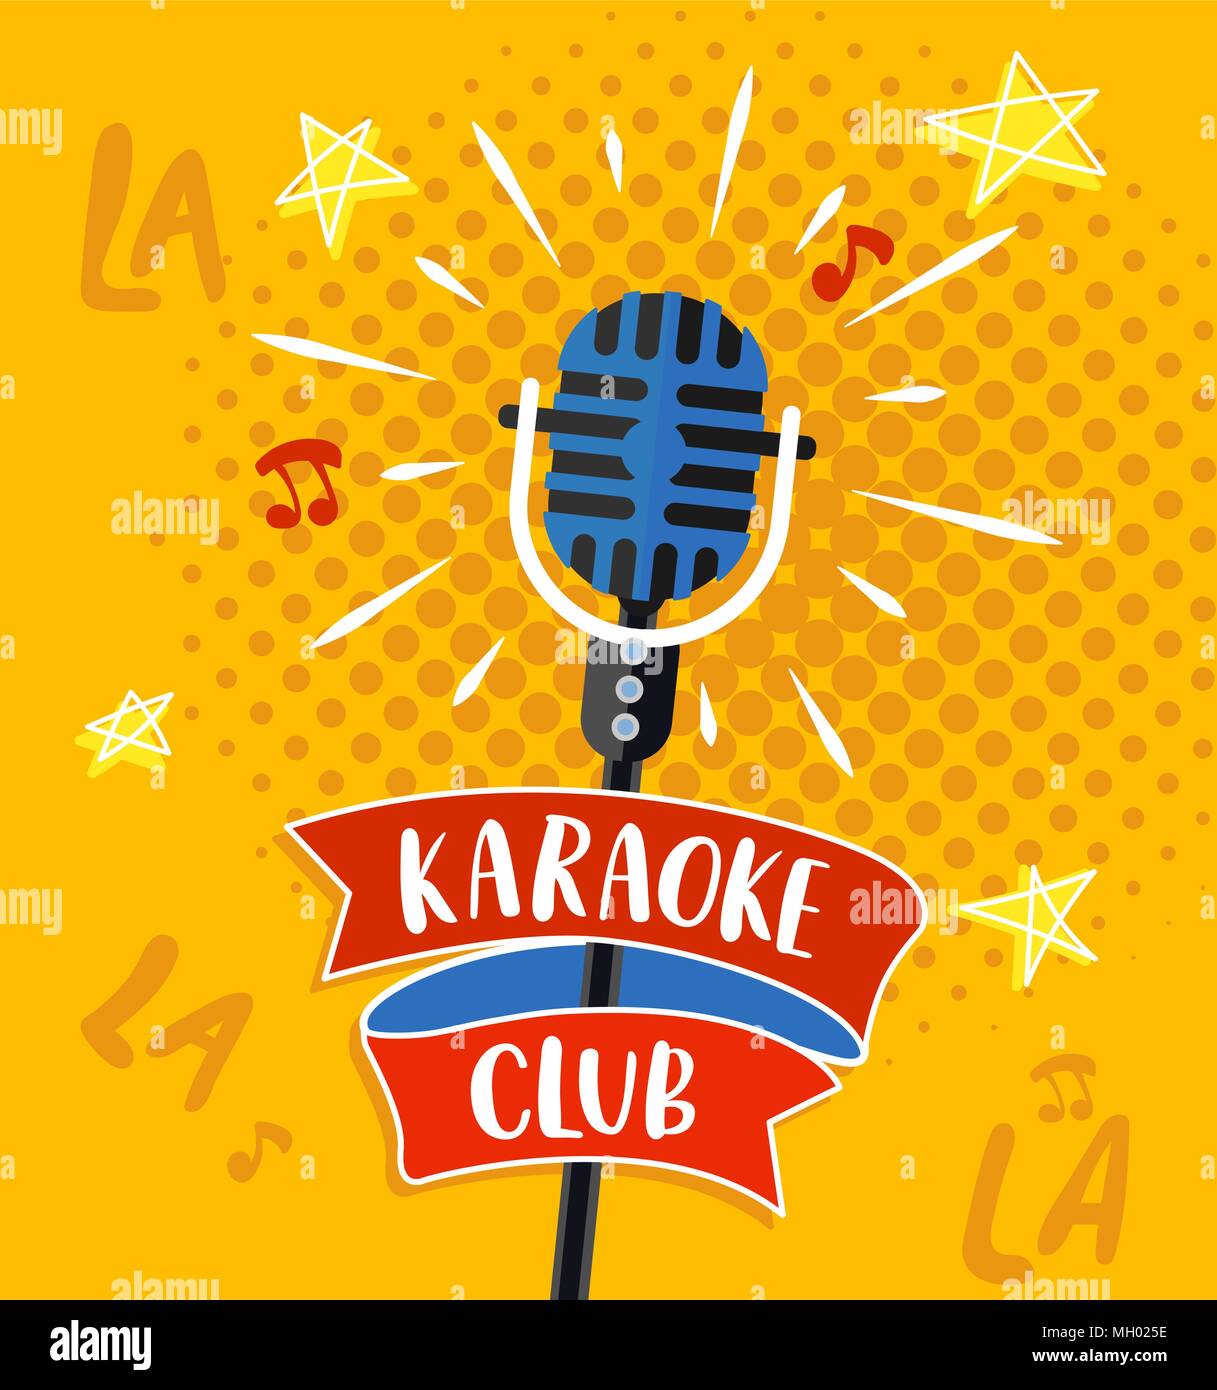 Karaoke club simbolo, logo o emblema con scritte. Illustrazione Vettoriale. Illustrazione Vettoriale